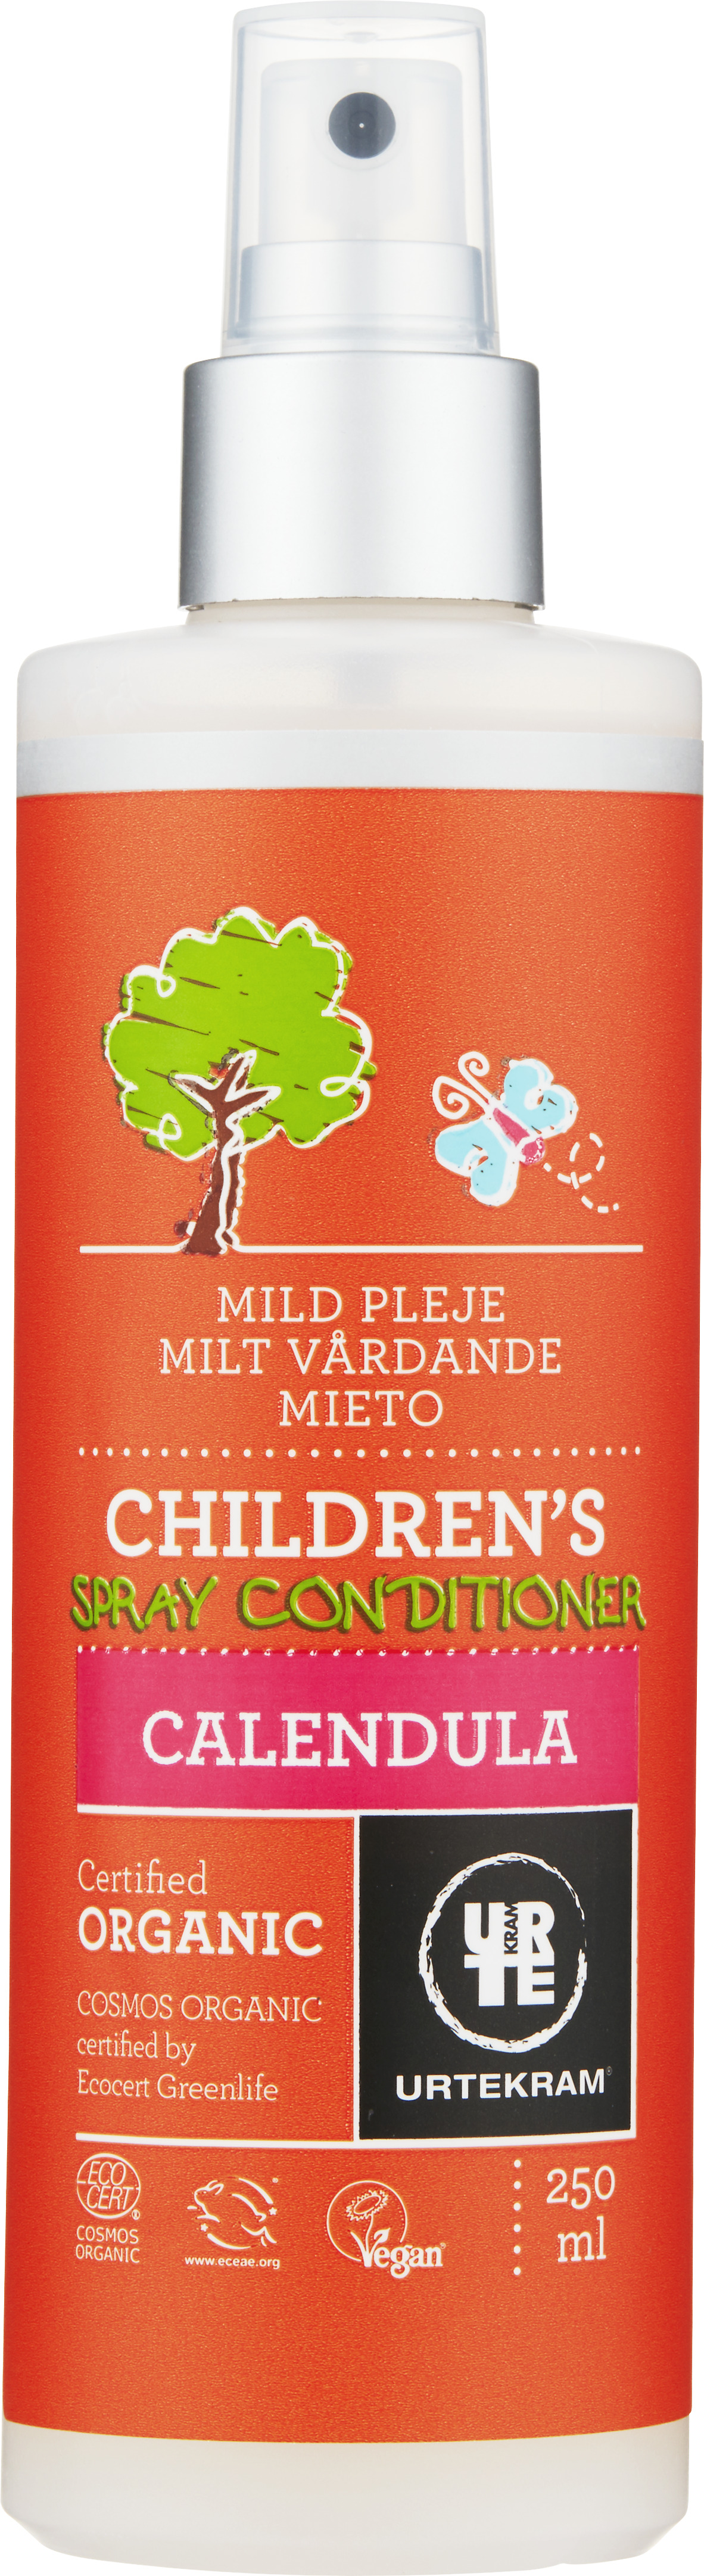 Urtekram Children Spray Conditioner 250 ml